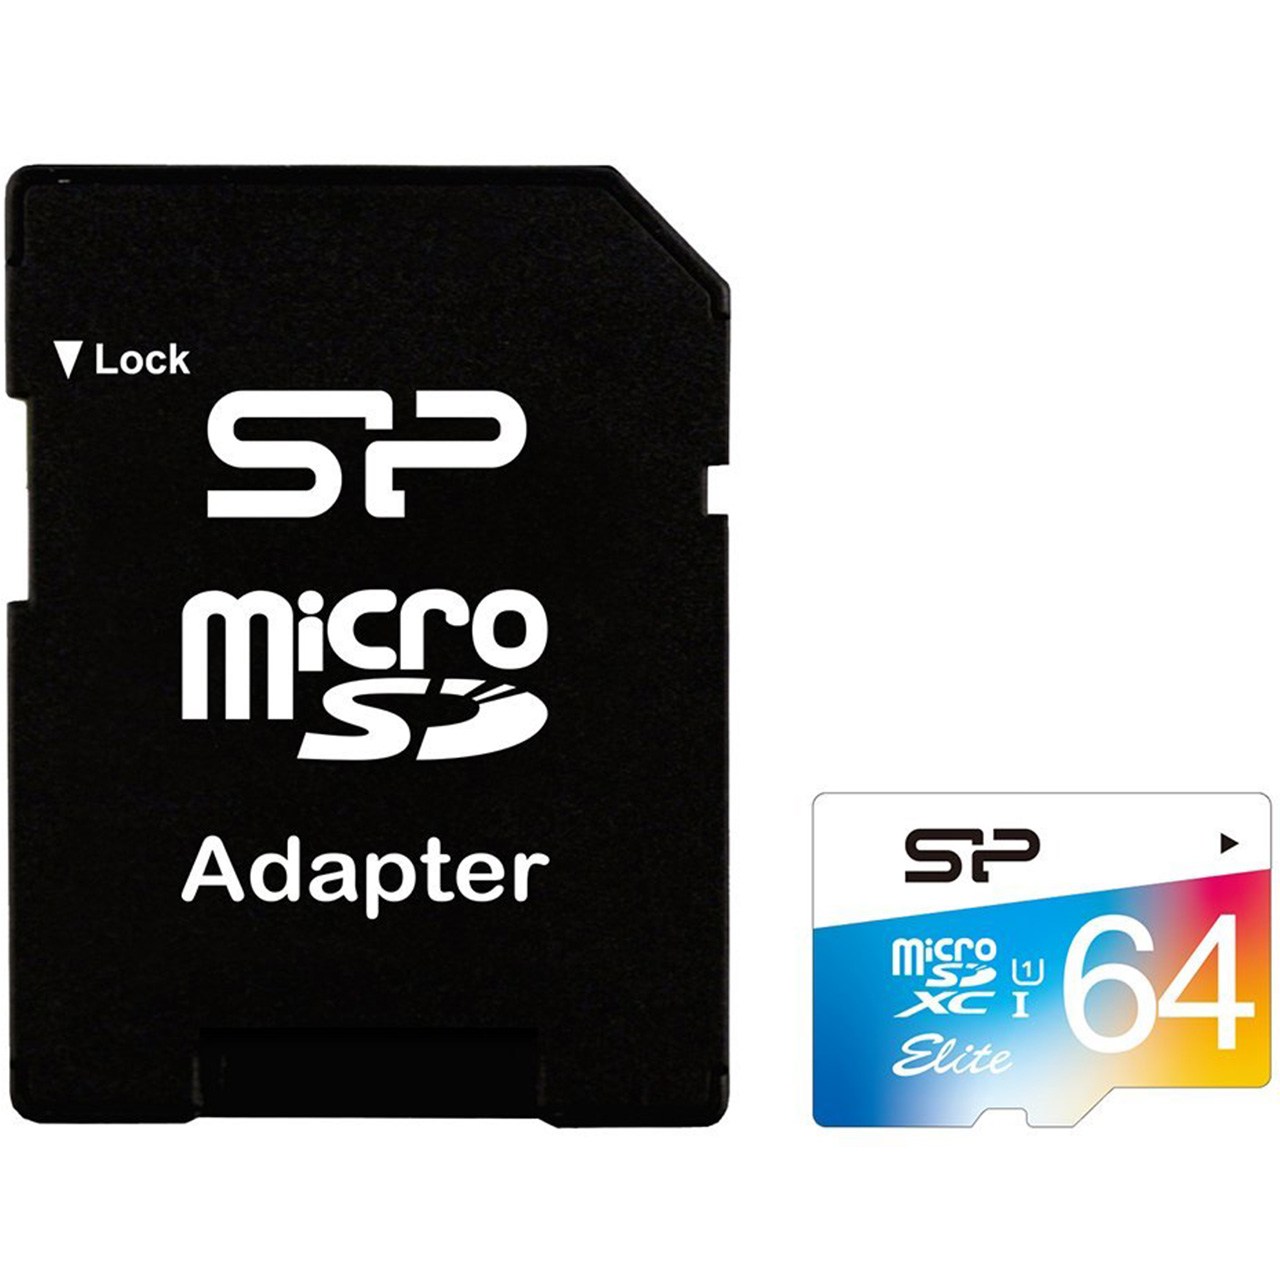 کارت حافظه microSDXC سیلیکون پاور مدل Color Elite کلاس 10 استاندارد UHS-I U1 سرعت 85MBps همراه با آداپتور SD ظرفیت 64 گیگابایت